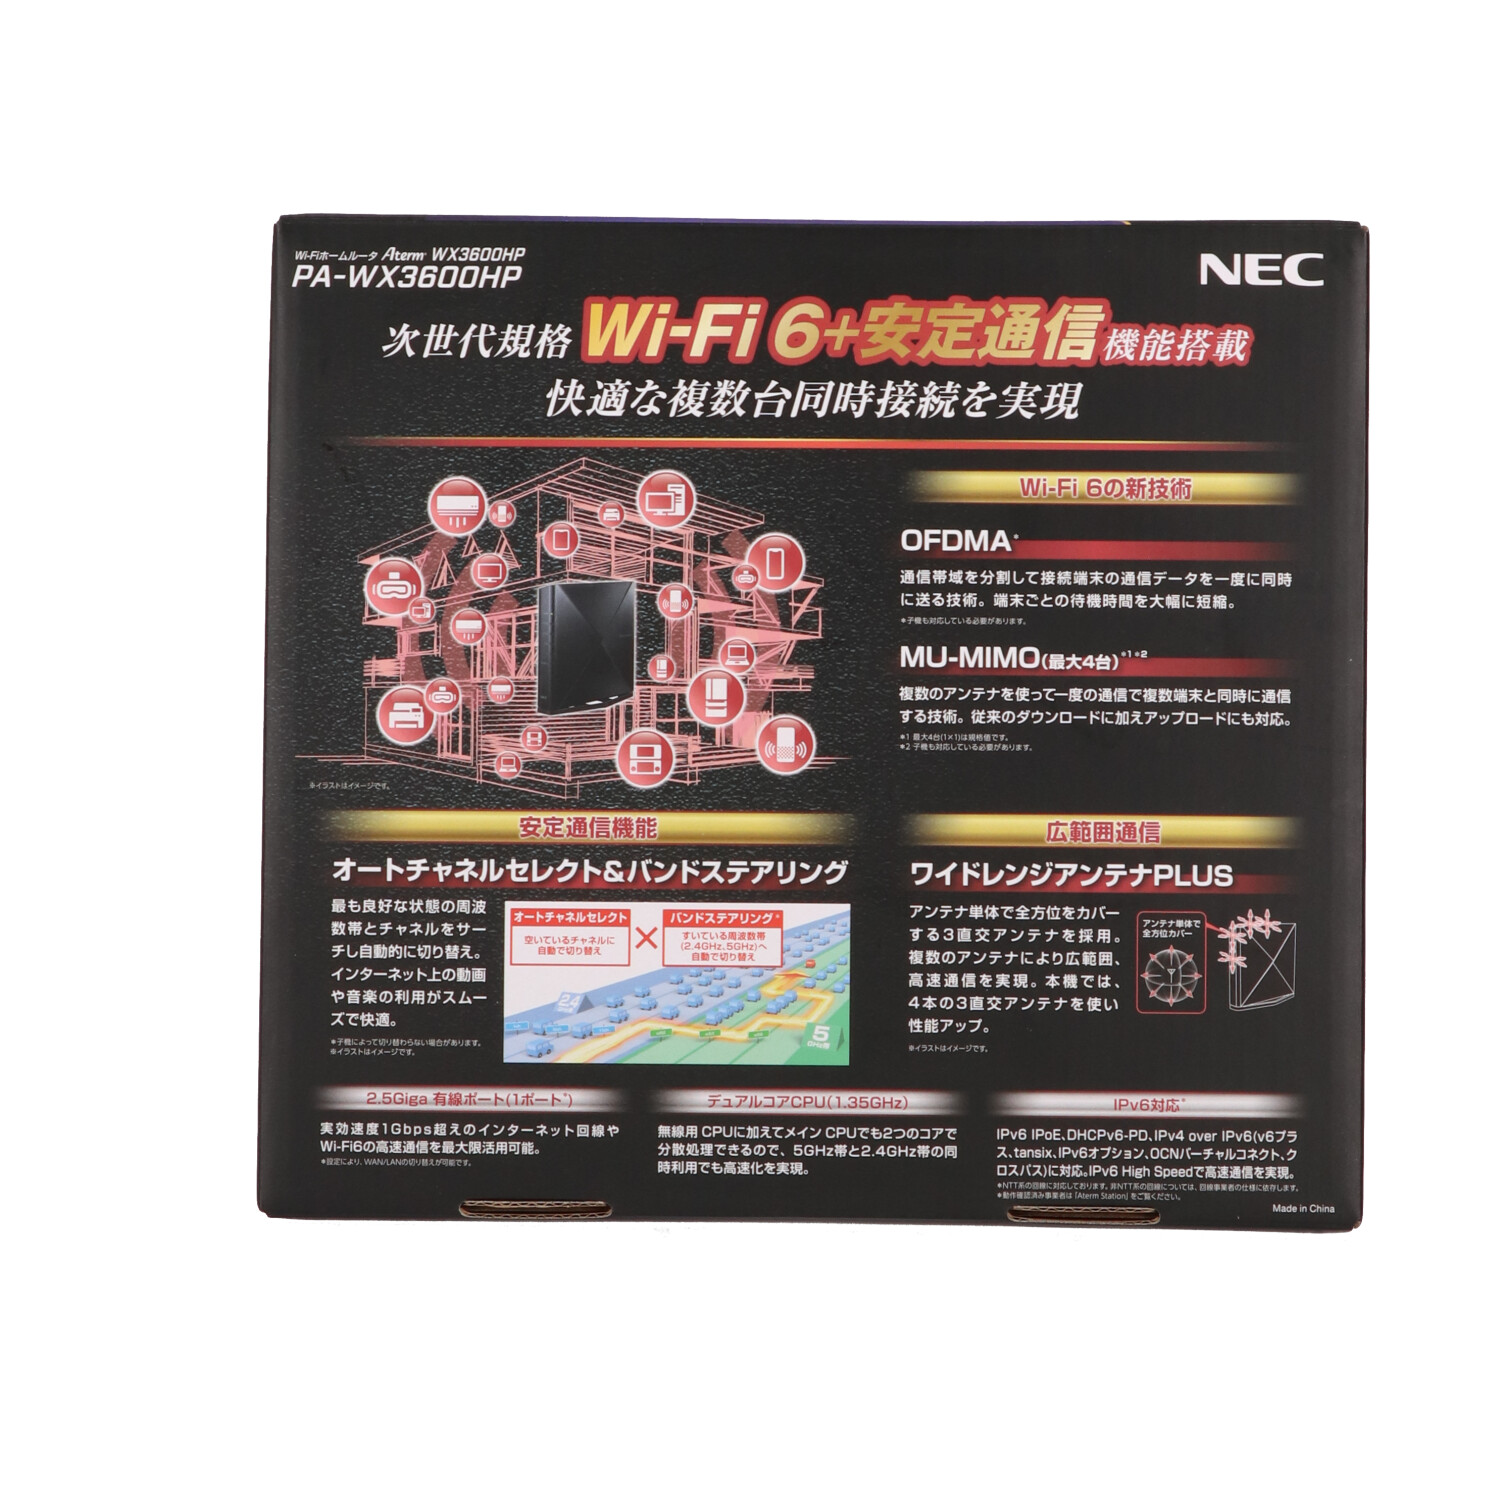 NEC Aterm 無線LAN WiFi ルーター Wi-Fi (11ax) AX3600HP 4ストリーム (5 - 4